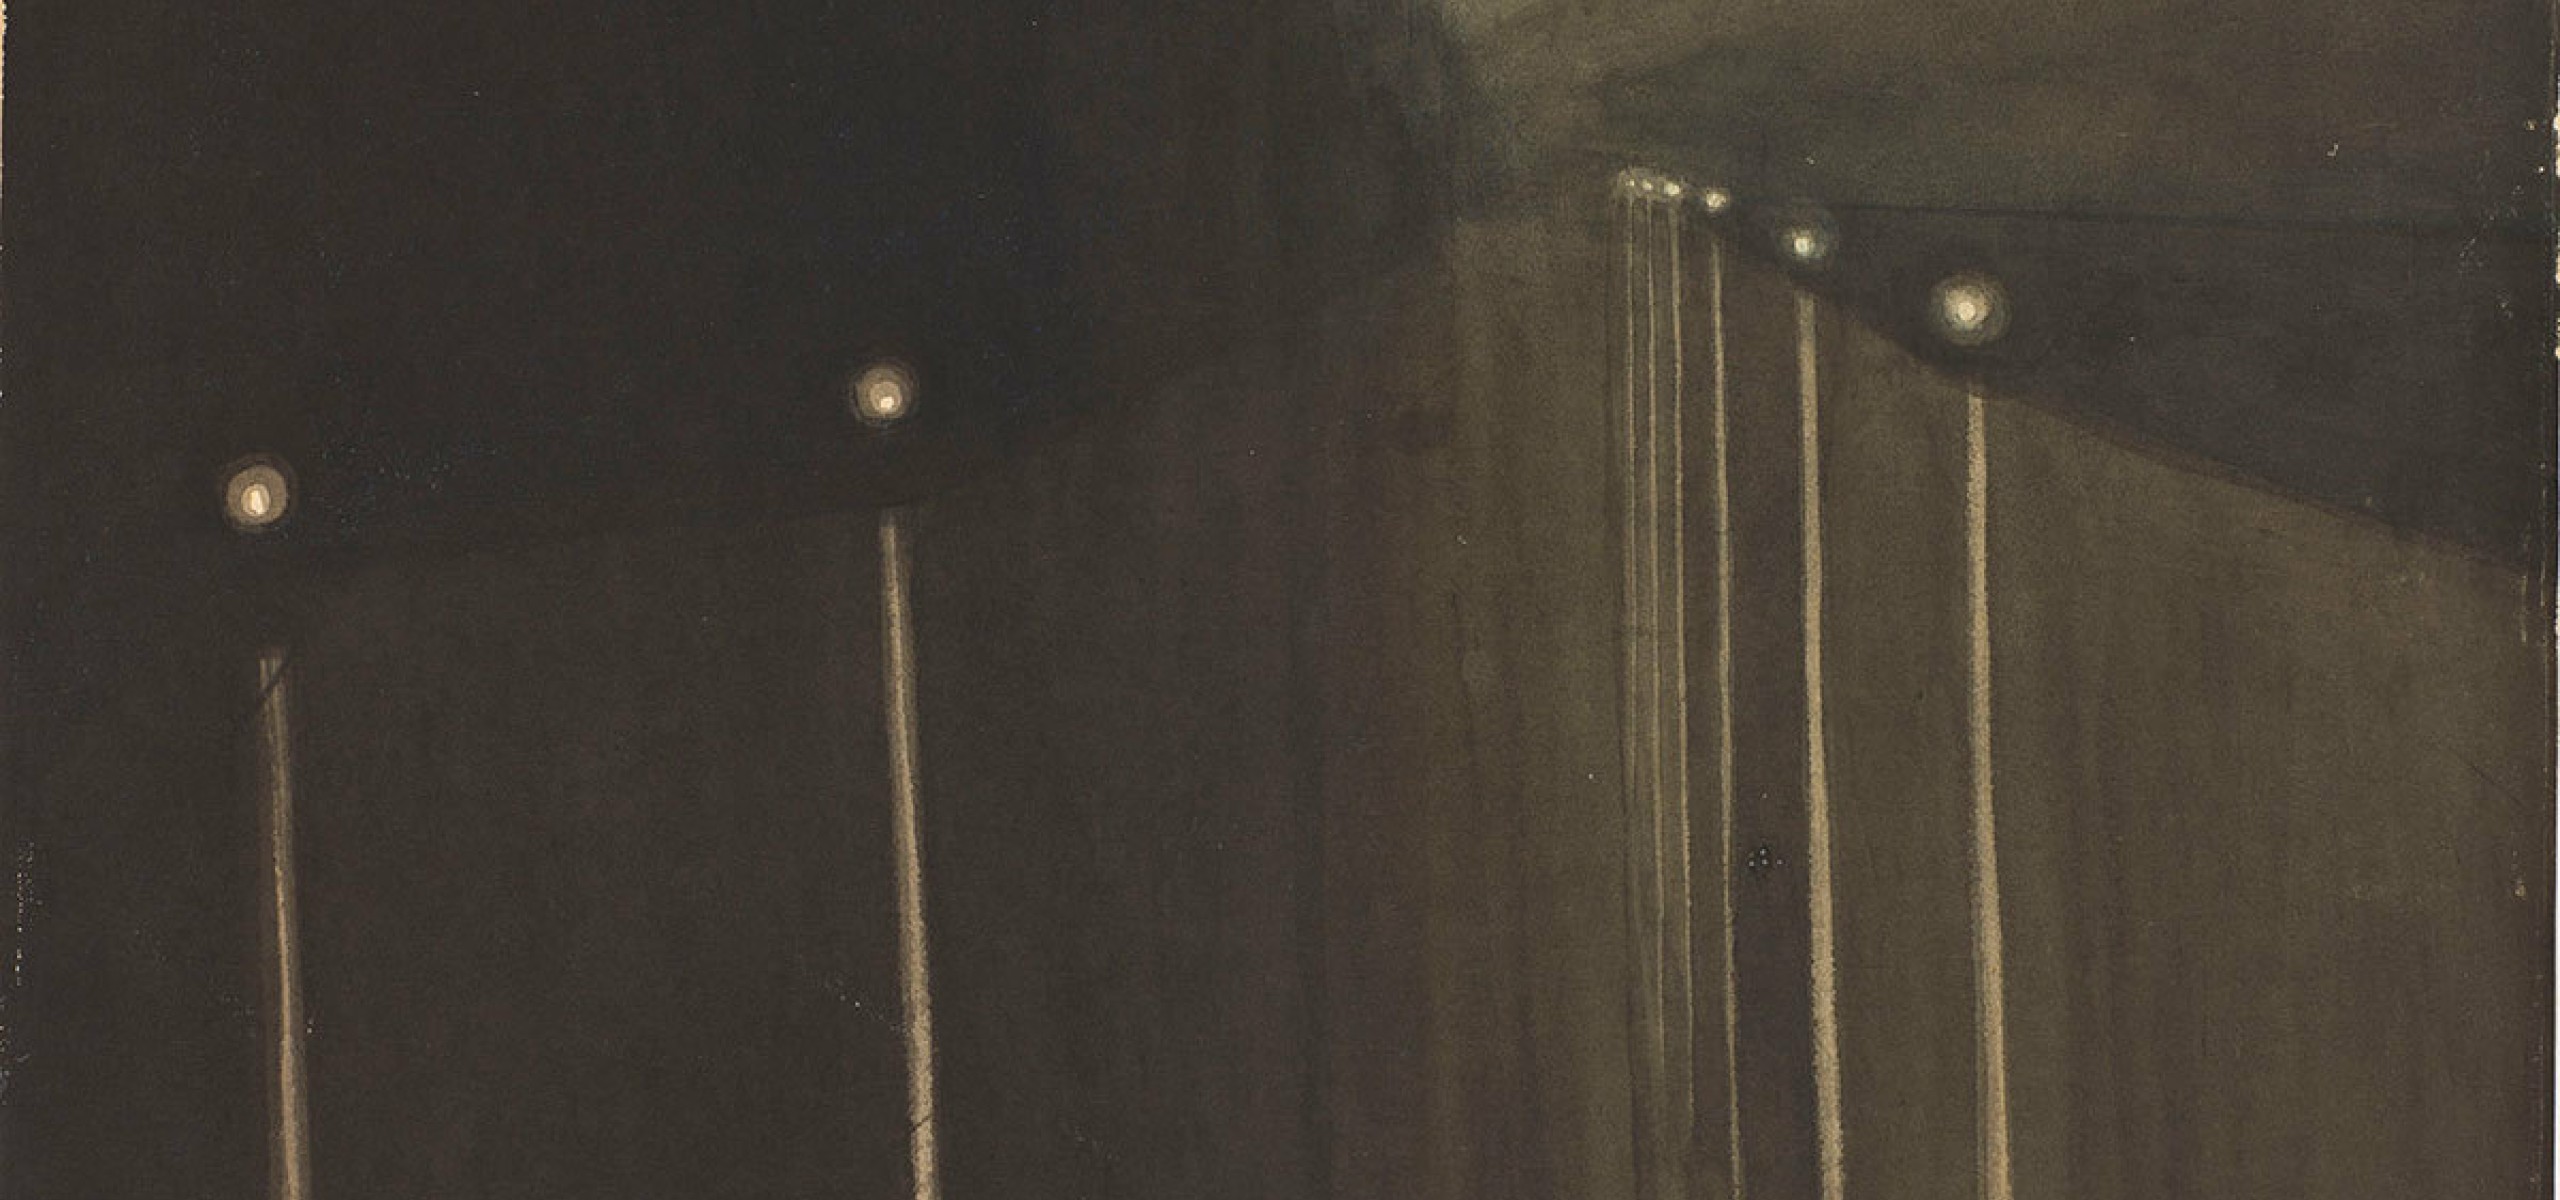 Léon Spilliaert, Dike at night. Reflected lights